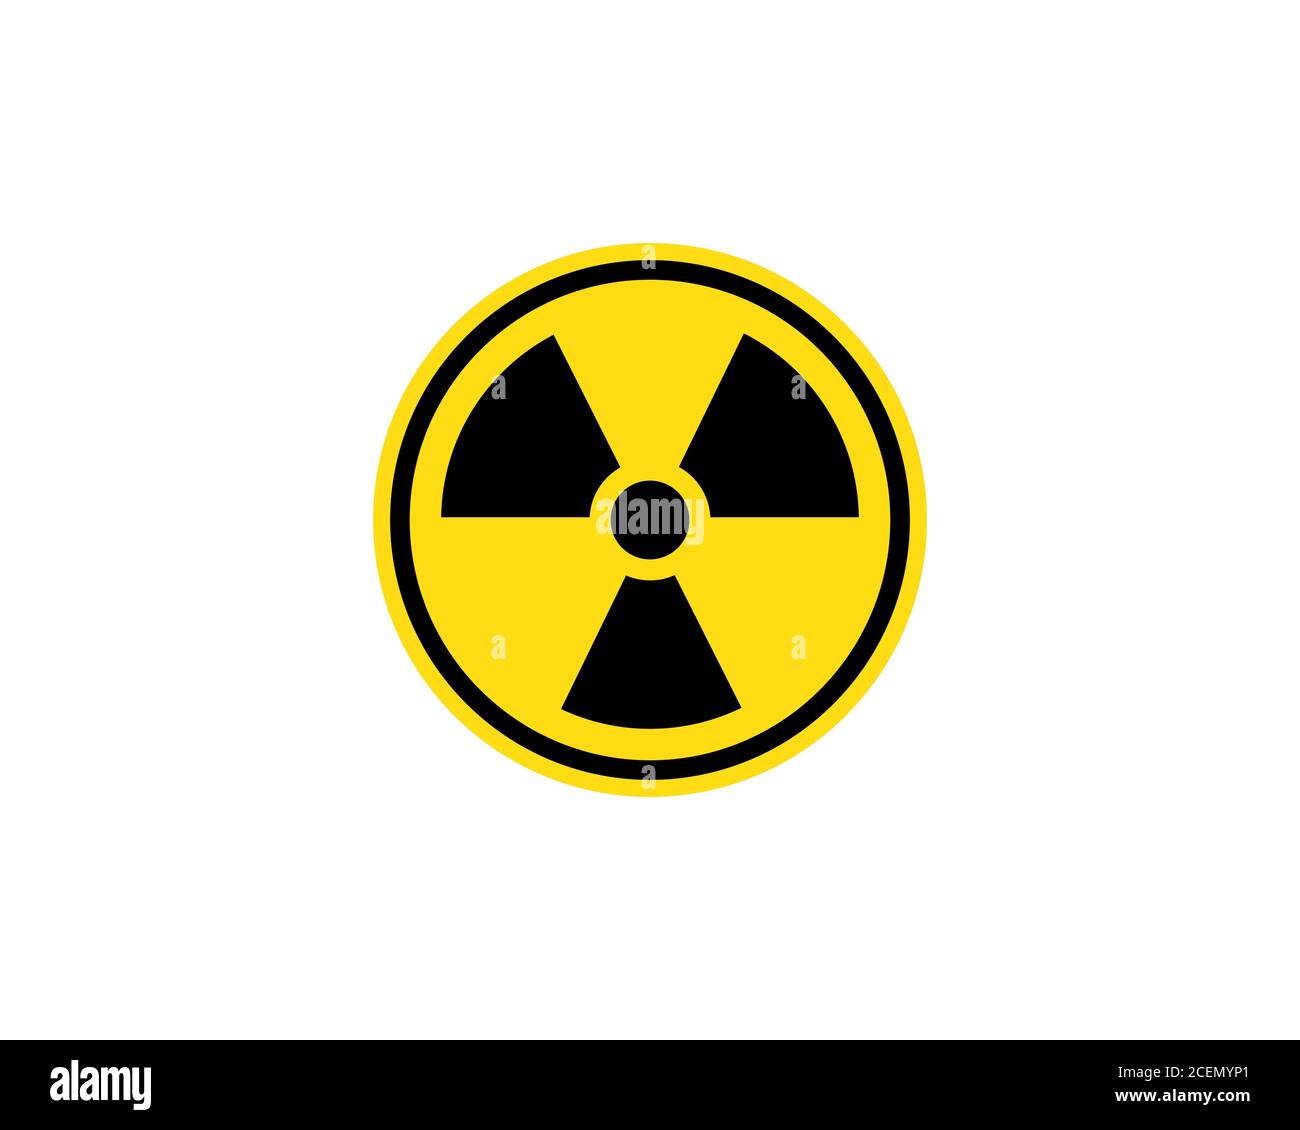 Strahlungszeichen. Gefahrenwarnung. Vektor auf isoliertem weißem Hintergrund. EPS 10 Stock Vektor